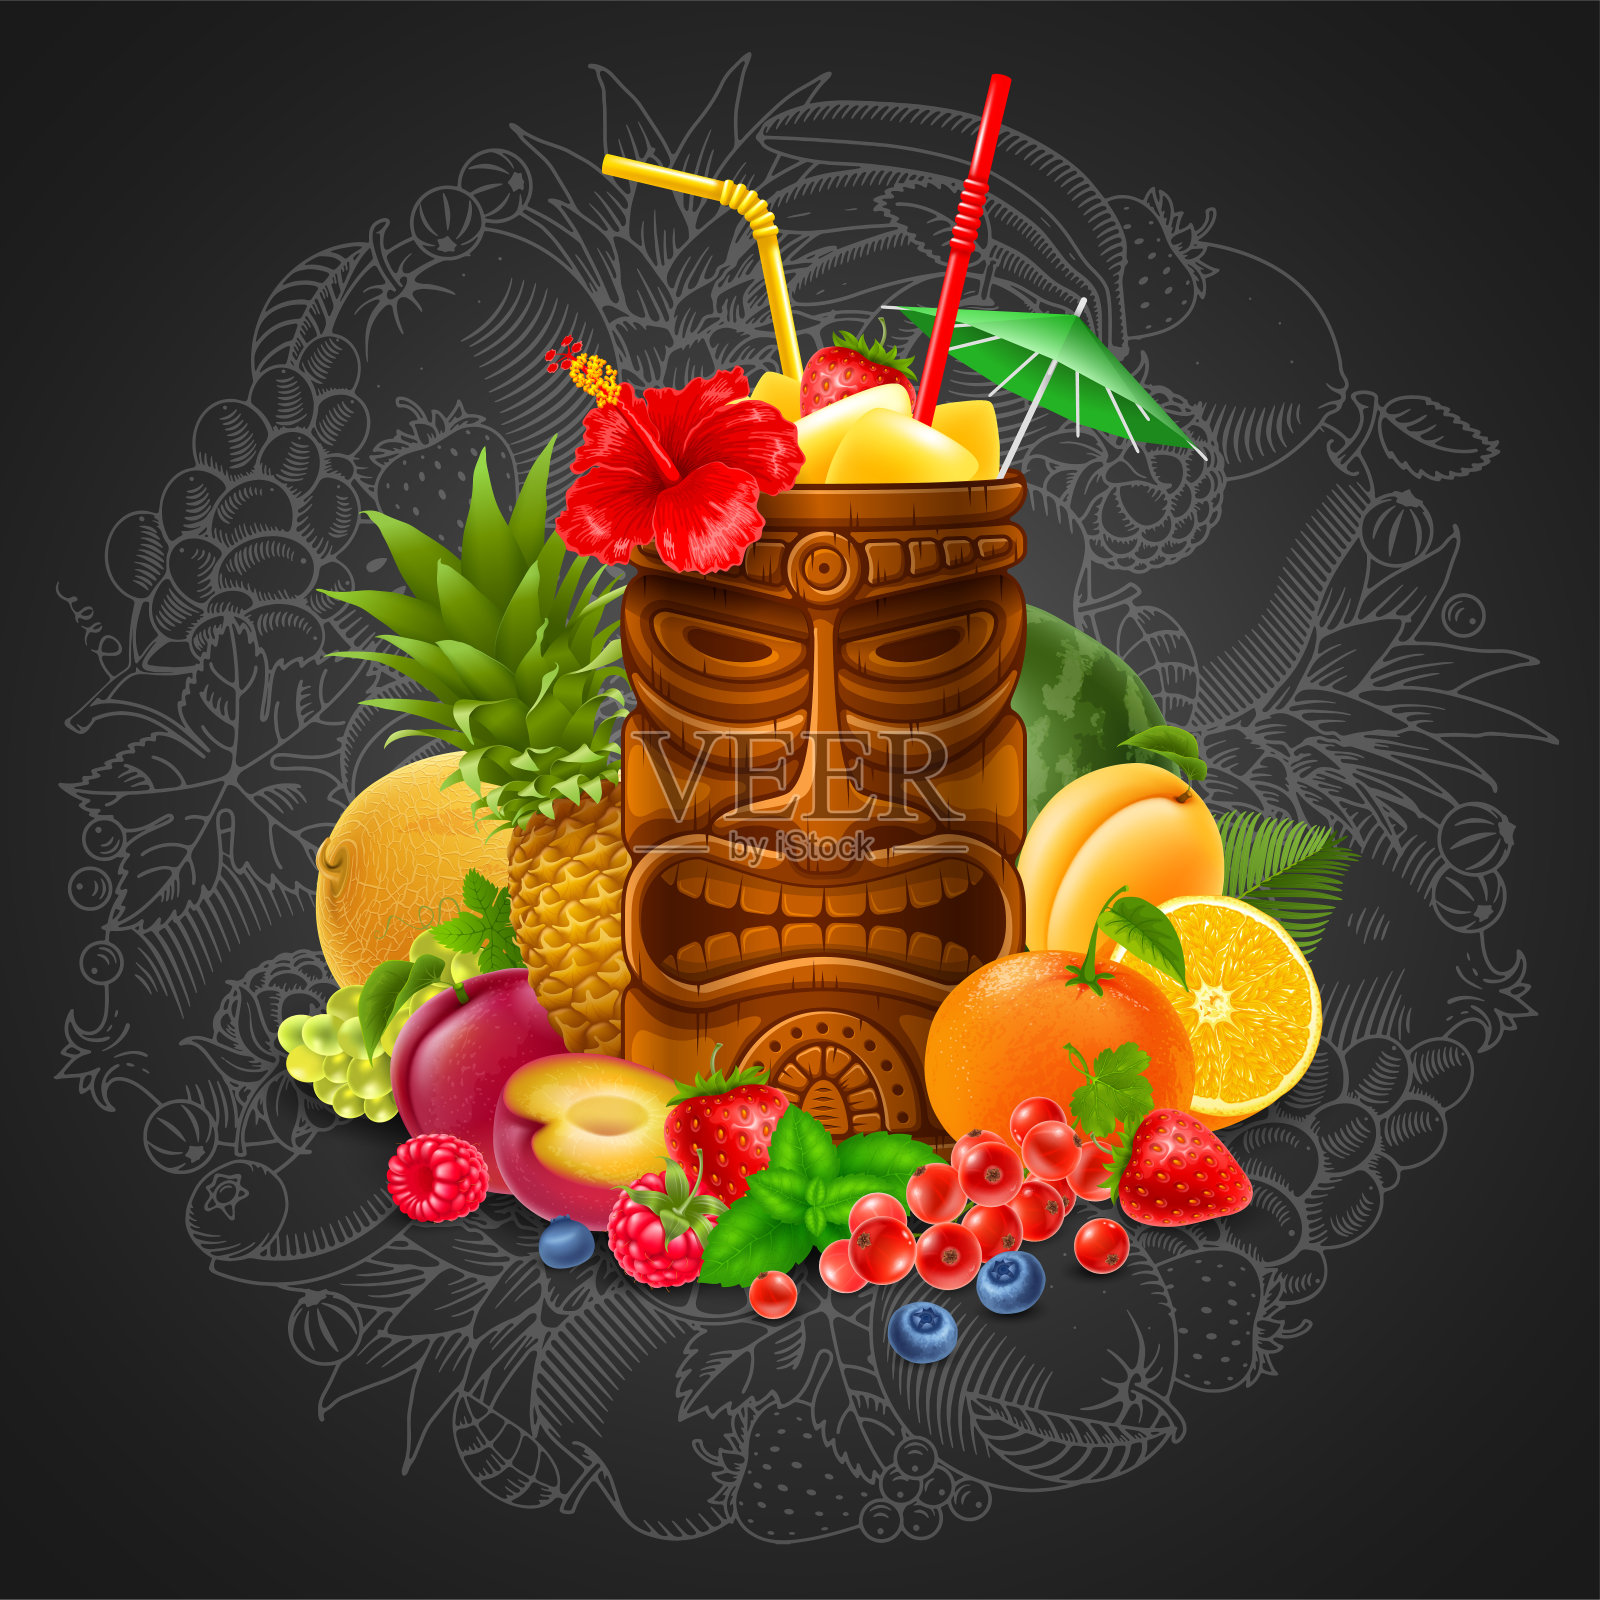 提基鸡尾酒与水果在黑板的背景插画图片素材